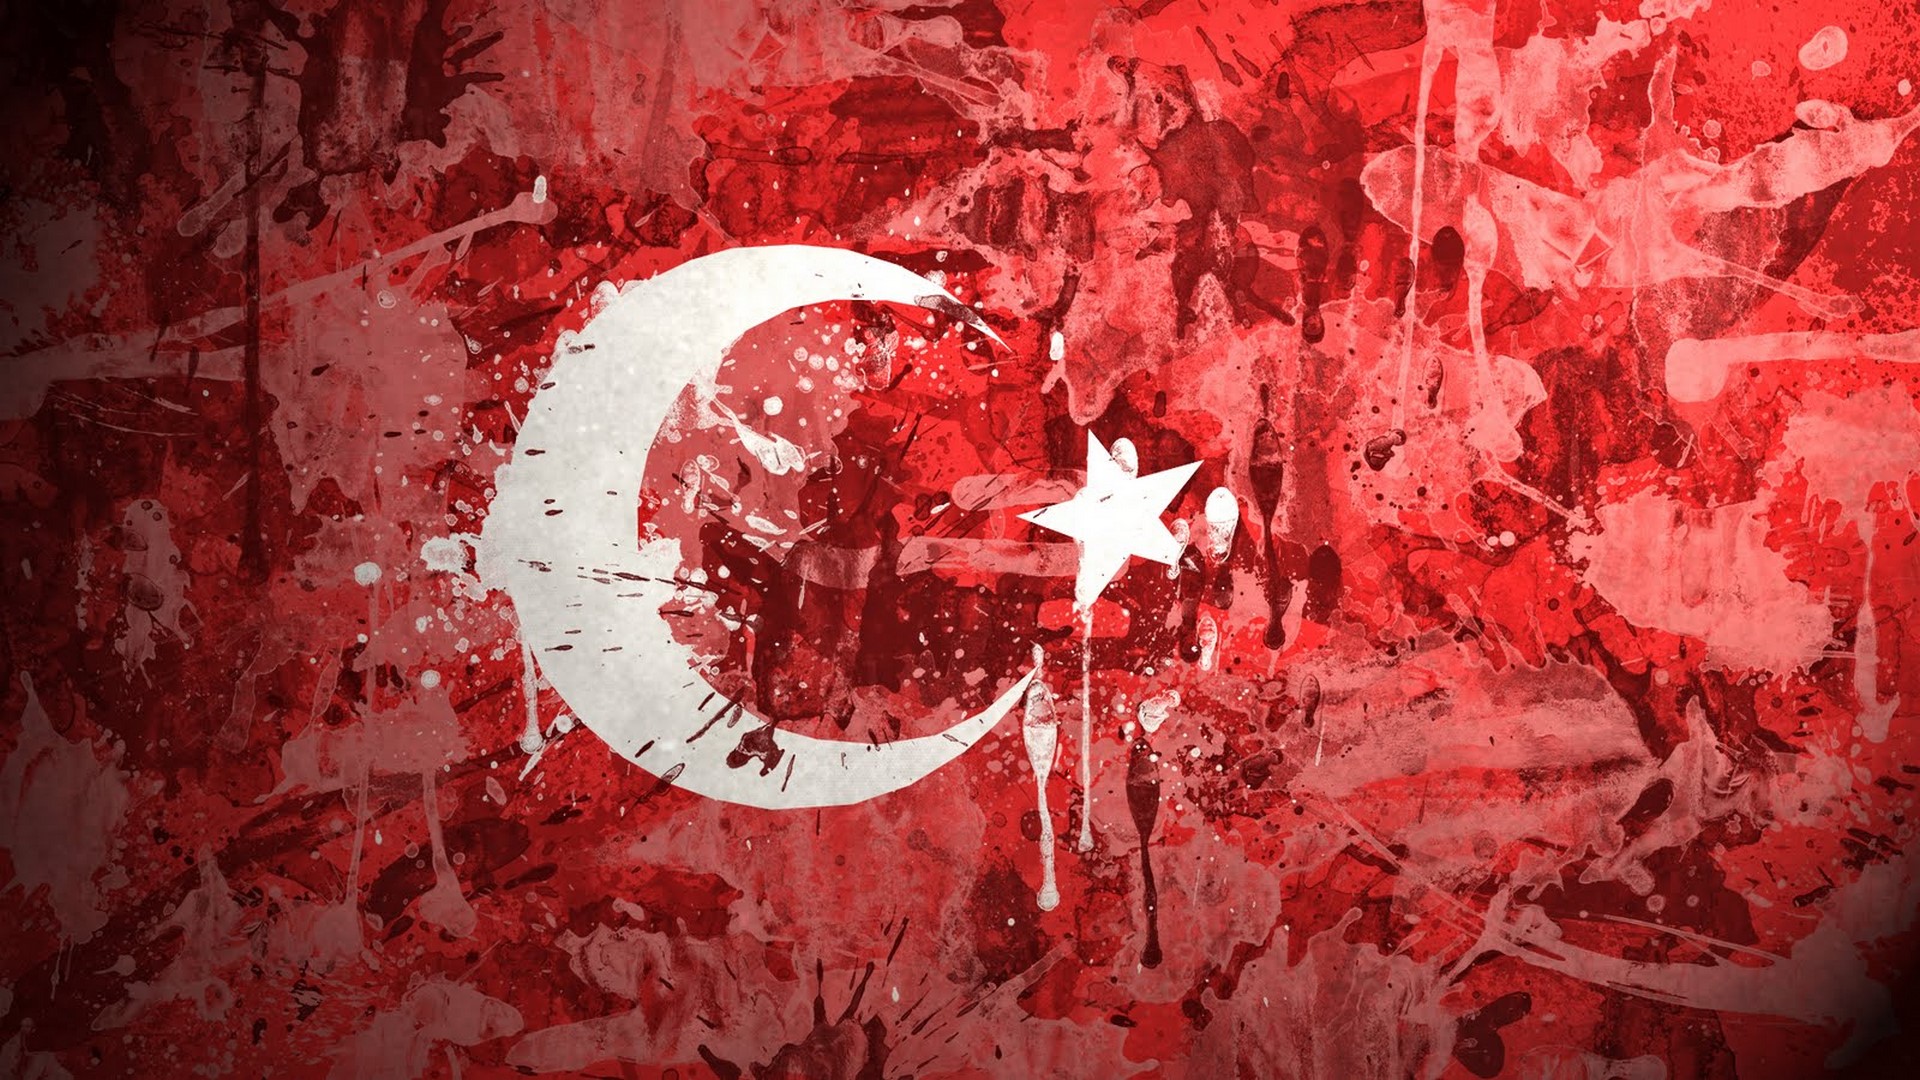 en guzel turk bayragi resimleri 14